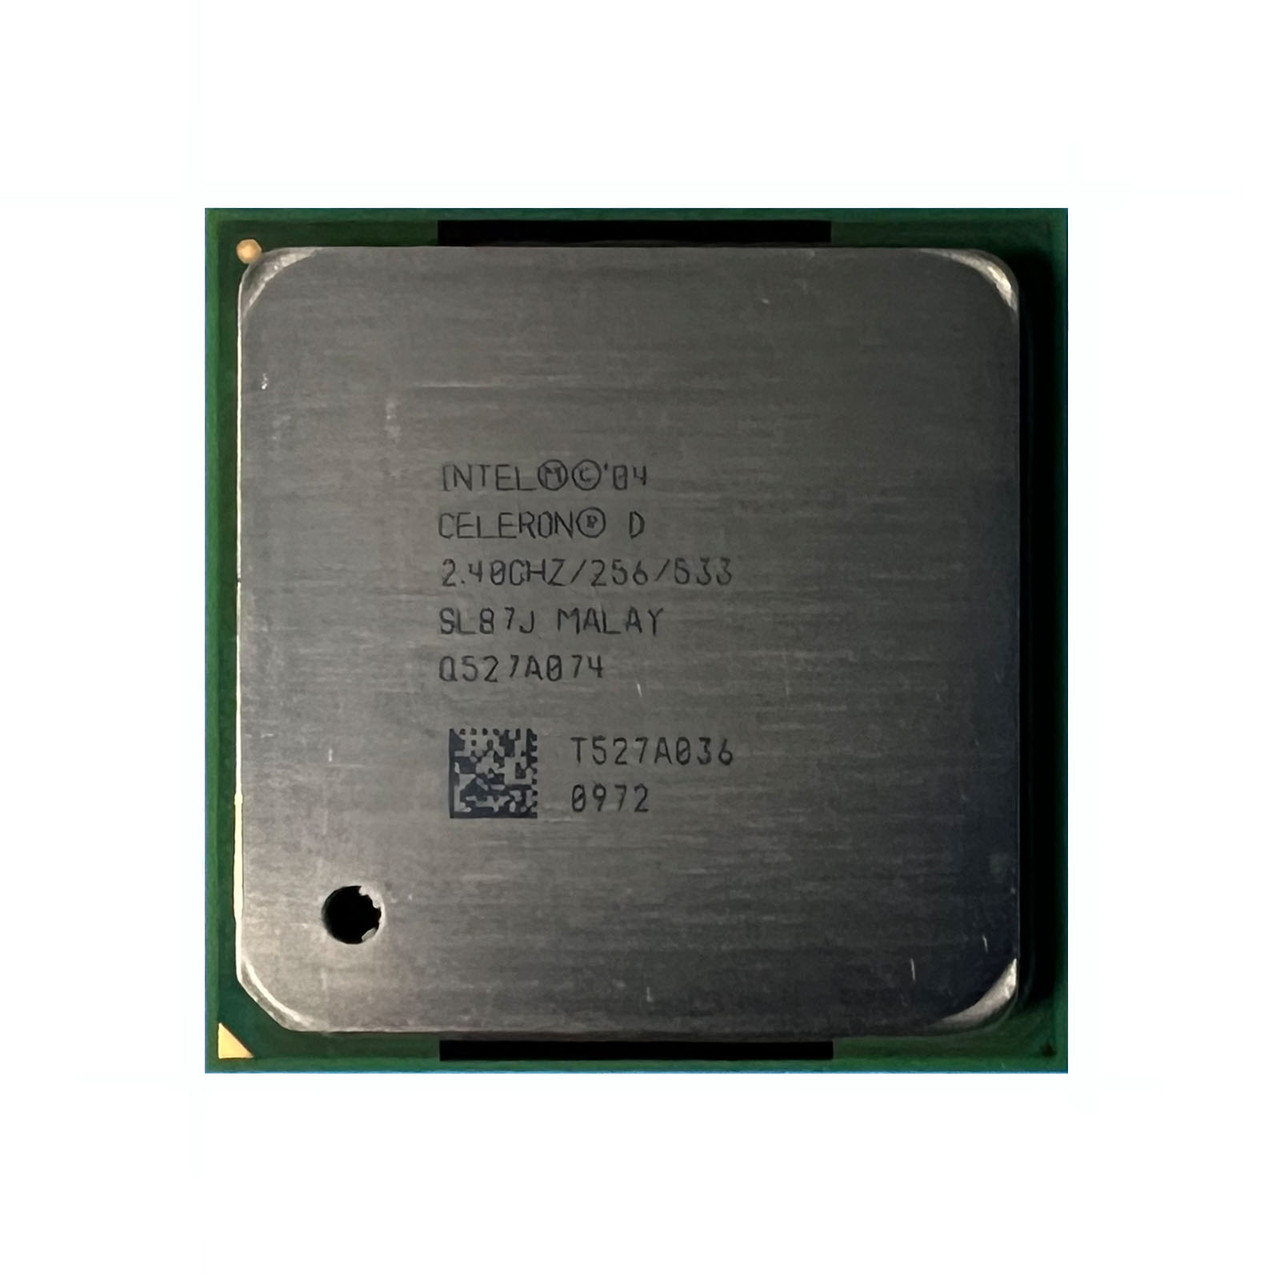 Dell R8306 Celeron D 320 2.4Ghz 256K 533Mhz Processor